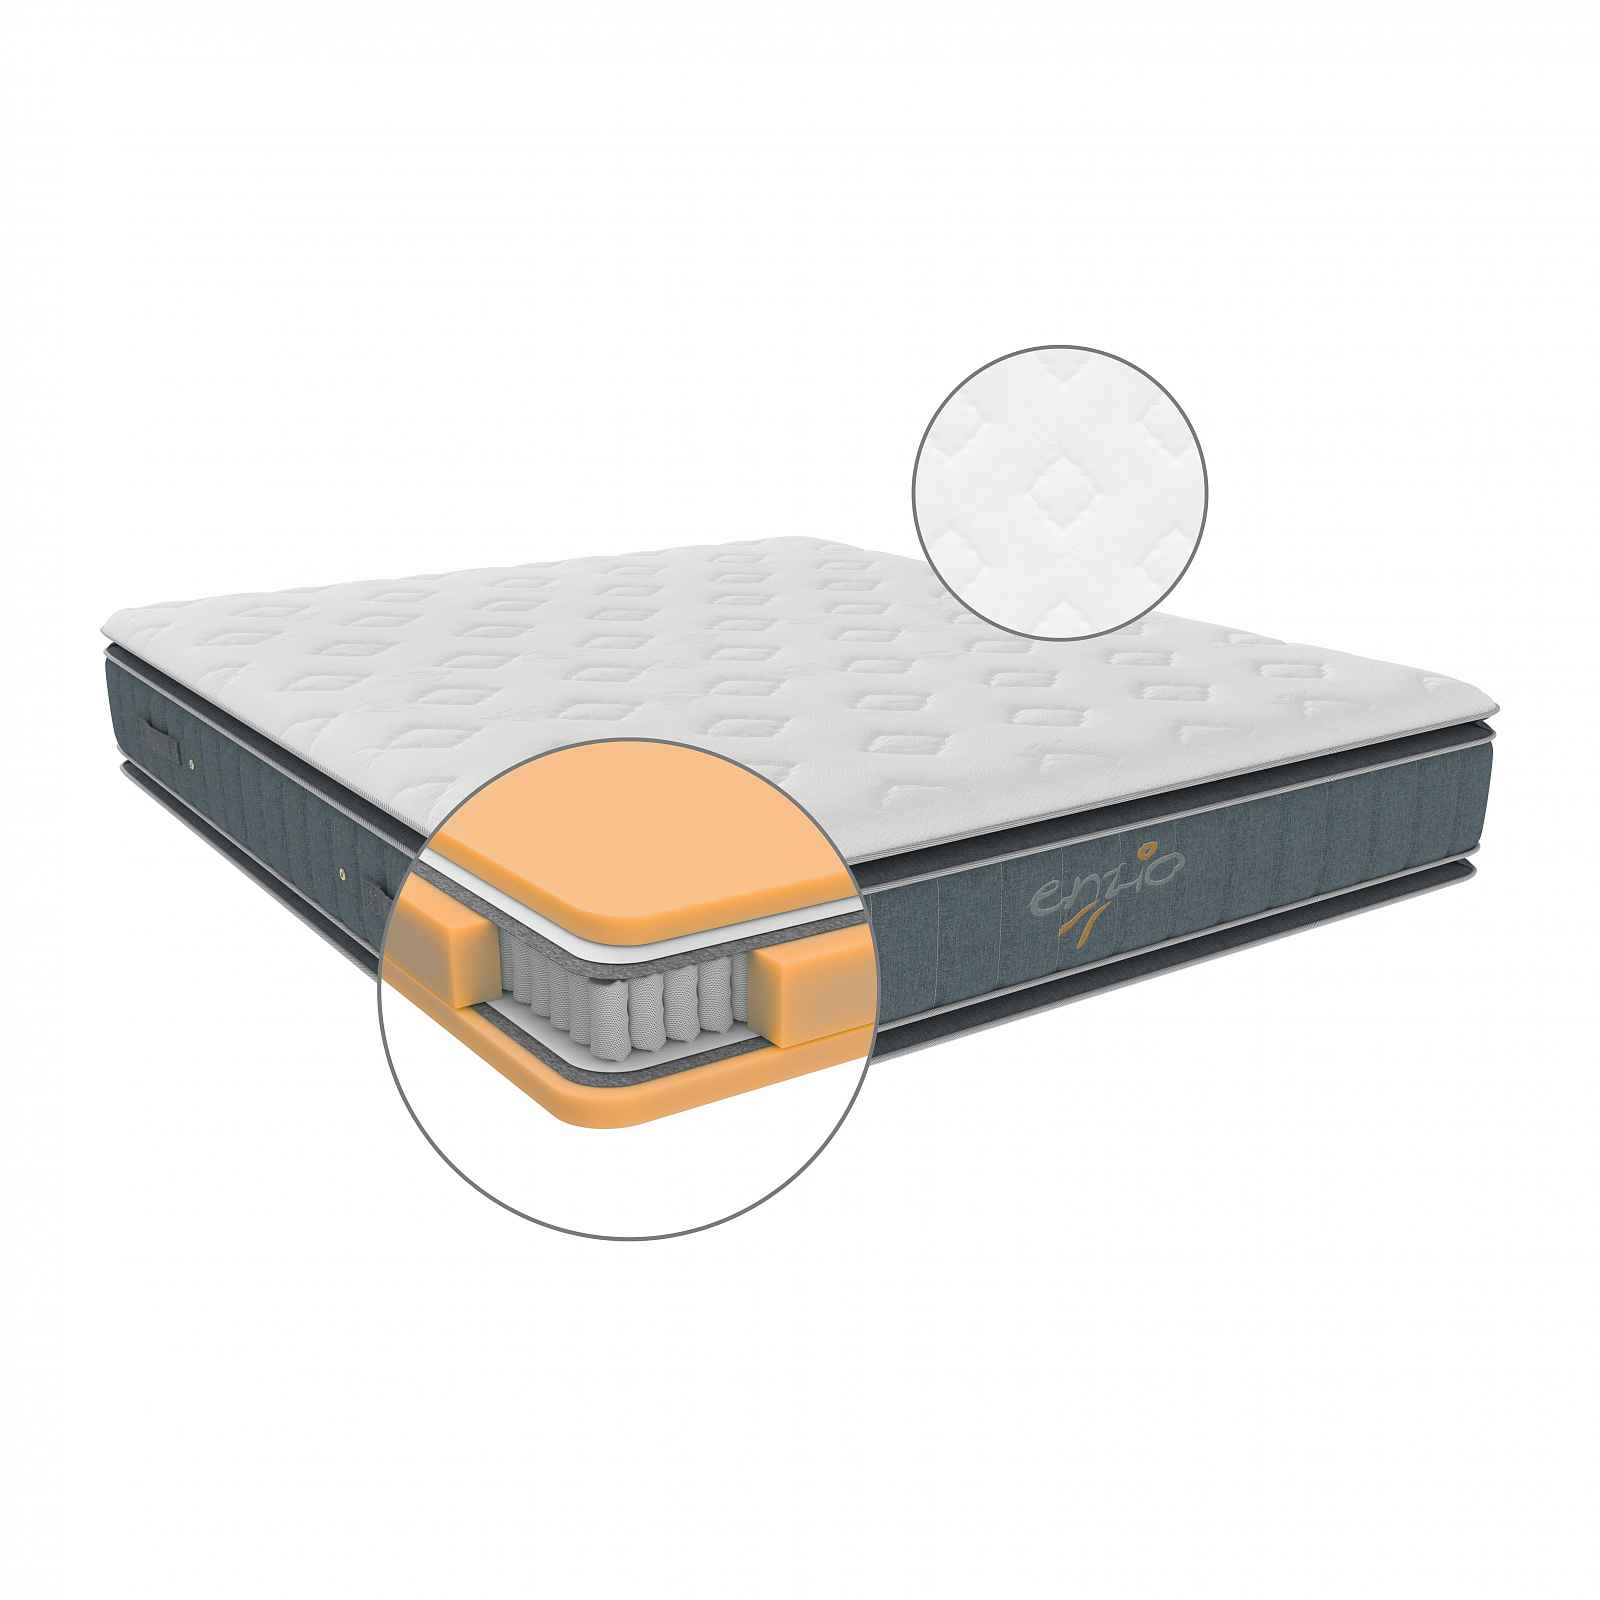 Matrace ATLANTA 2.0 vhodná pro boxspringové postele s dvěma pocity tuhosti 100x200 cm